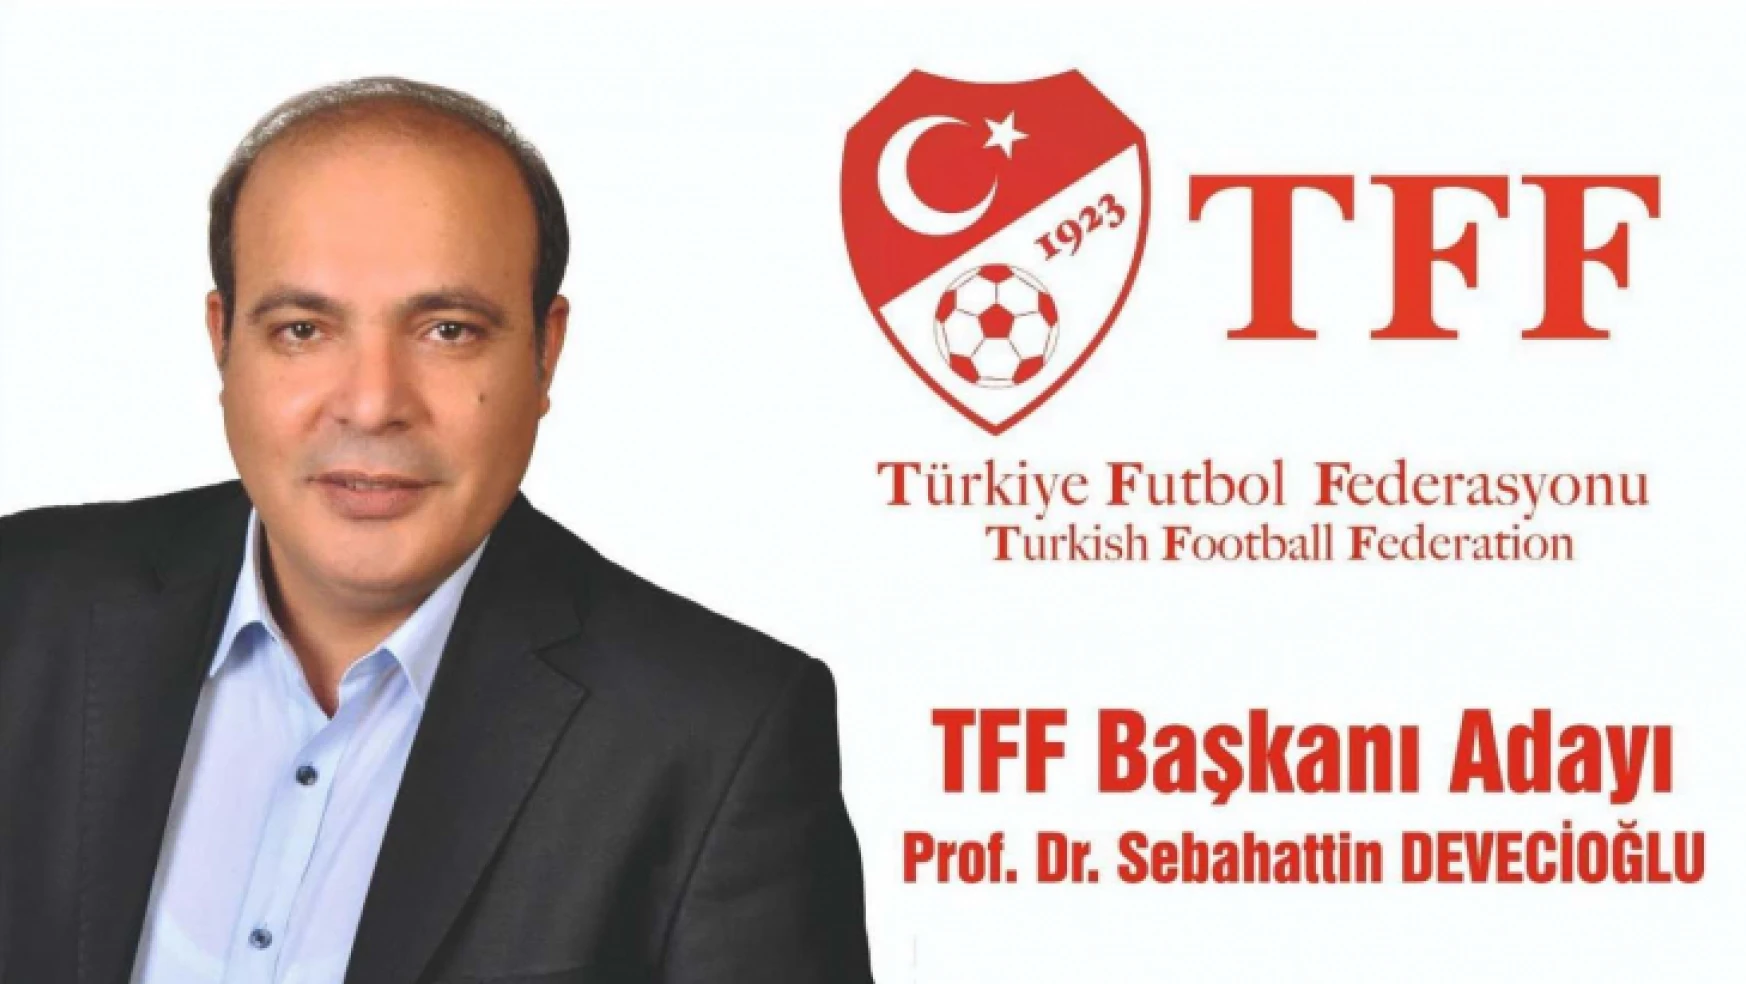 Futbolun profesörü TFF Başkanlığına aday